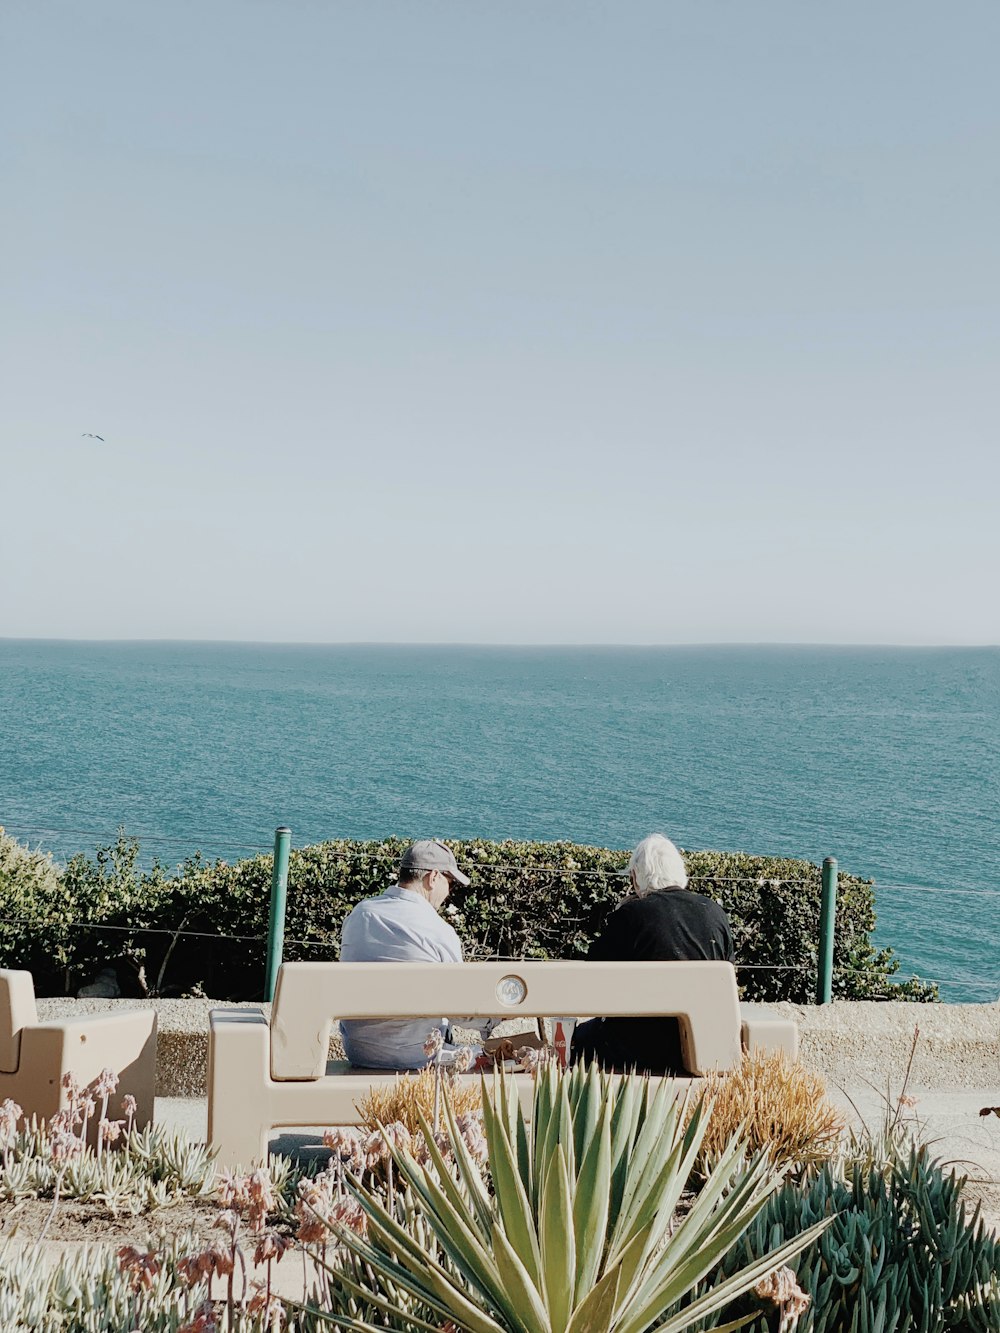 Pareja sentada en un banco blanco cerca del mar durante el día